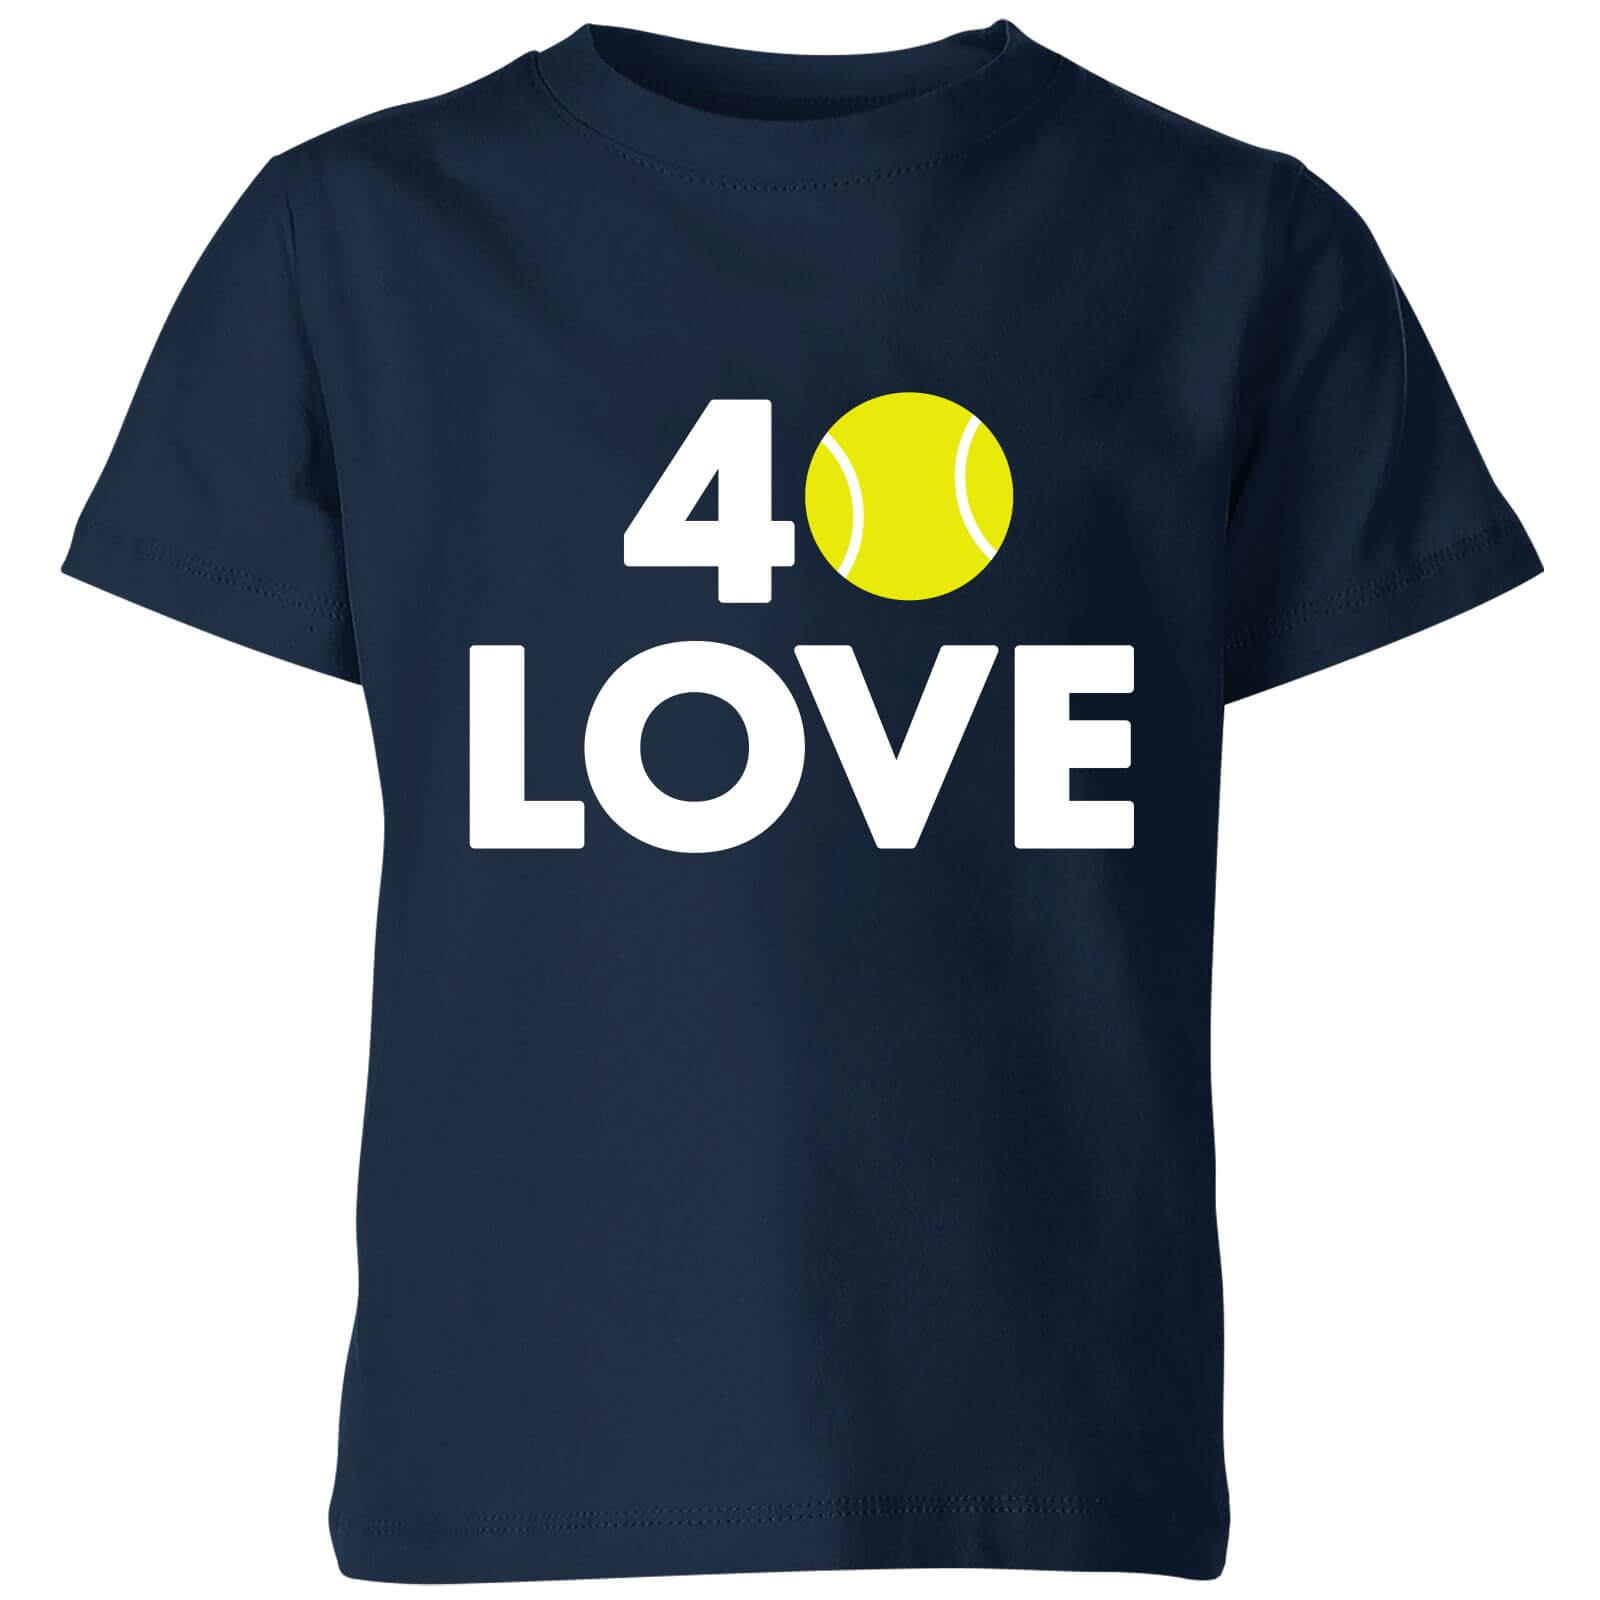 40 Love Kids' T-Shirt - Navy - 3-4 Years - Navy